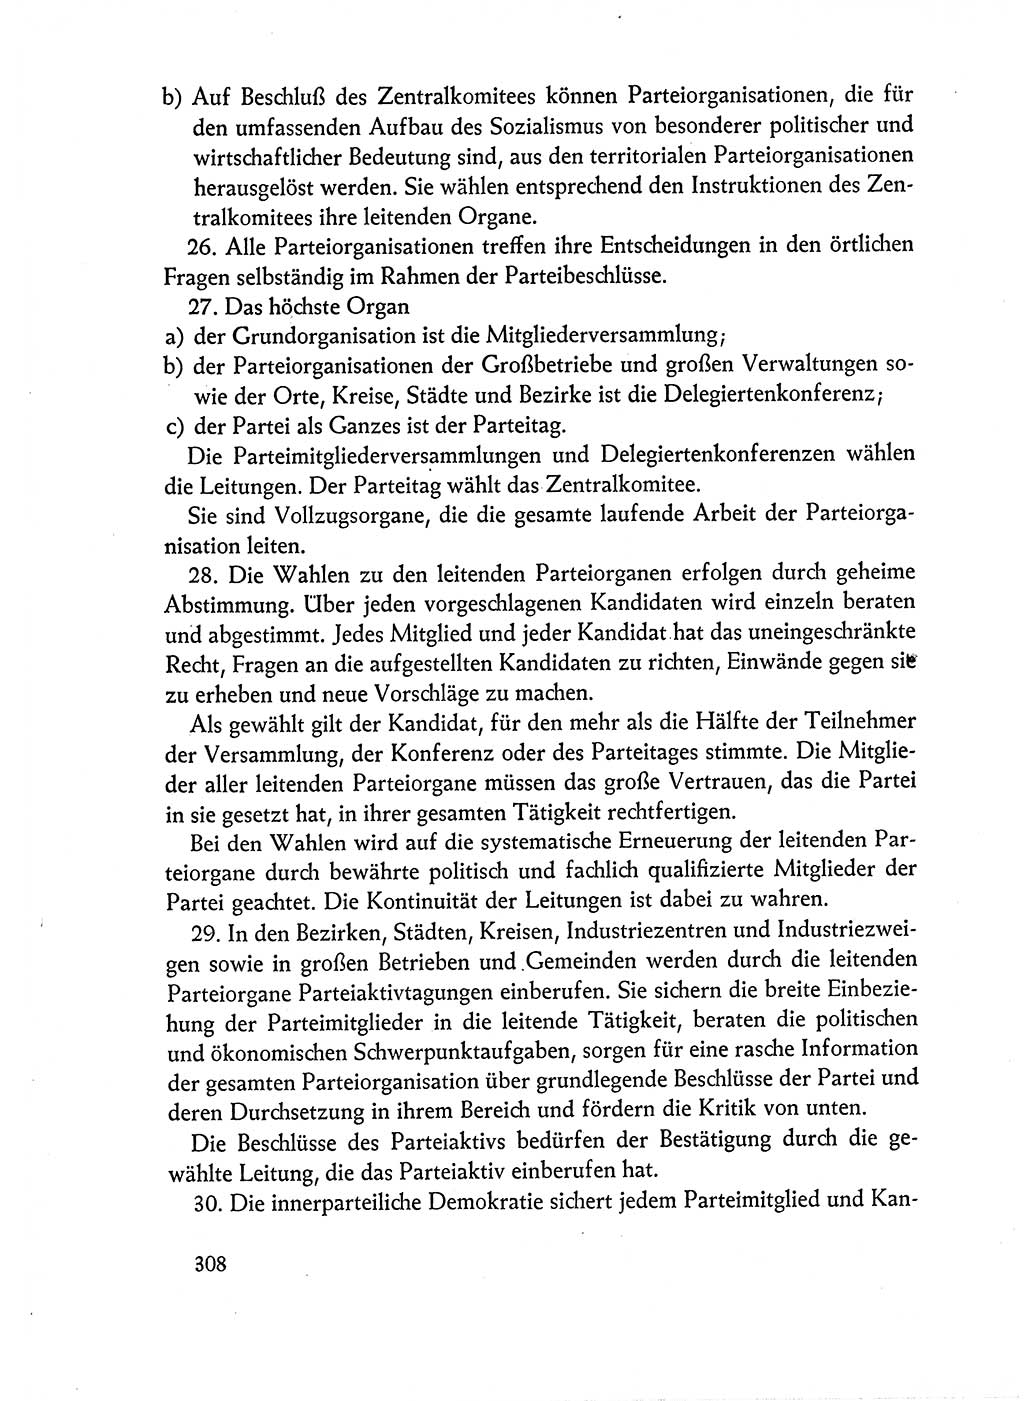 Dokumente der Sozialistischen Einheitspartei Deutschlands (SED) [Deutsche Demokratische Republik (DDR)] 1962-1963, Seite 308 (Dok. SED DDR 1962-1963, S. 308)